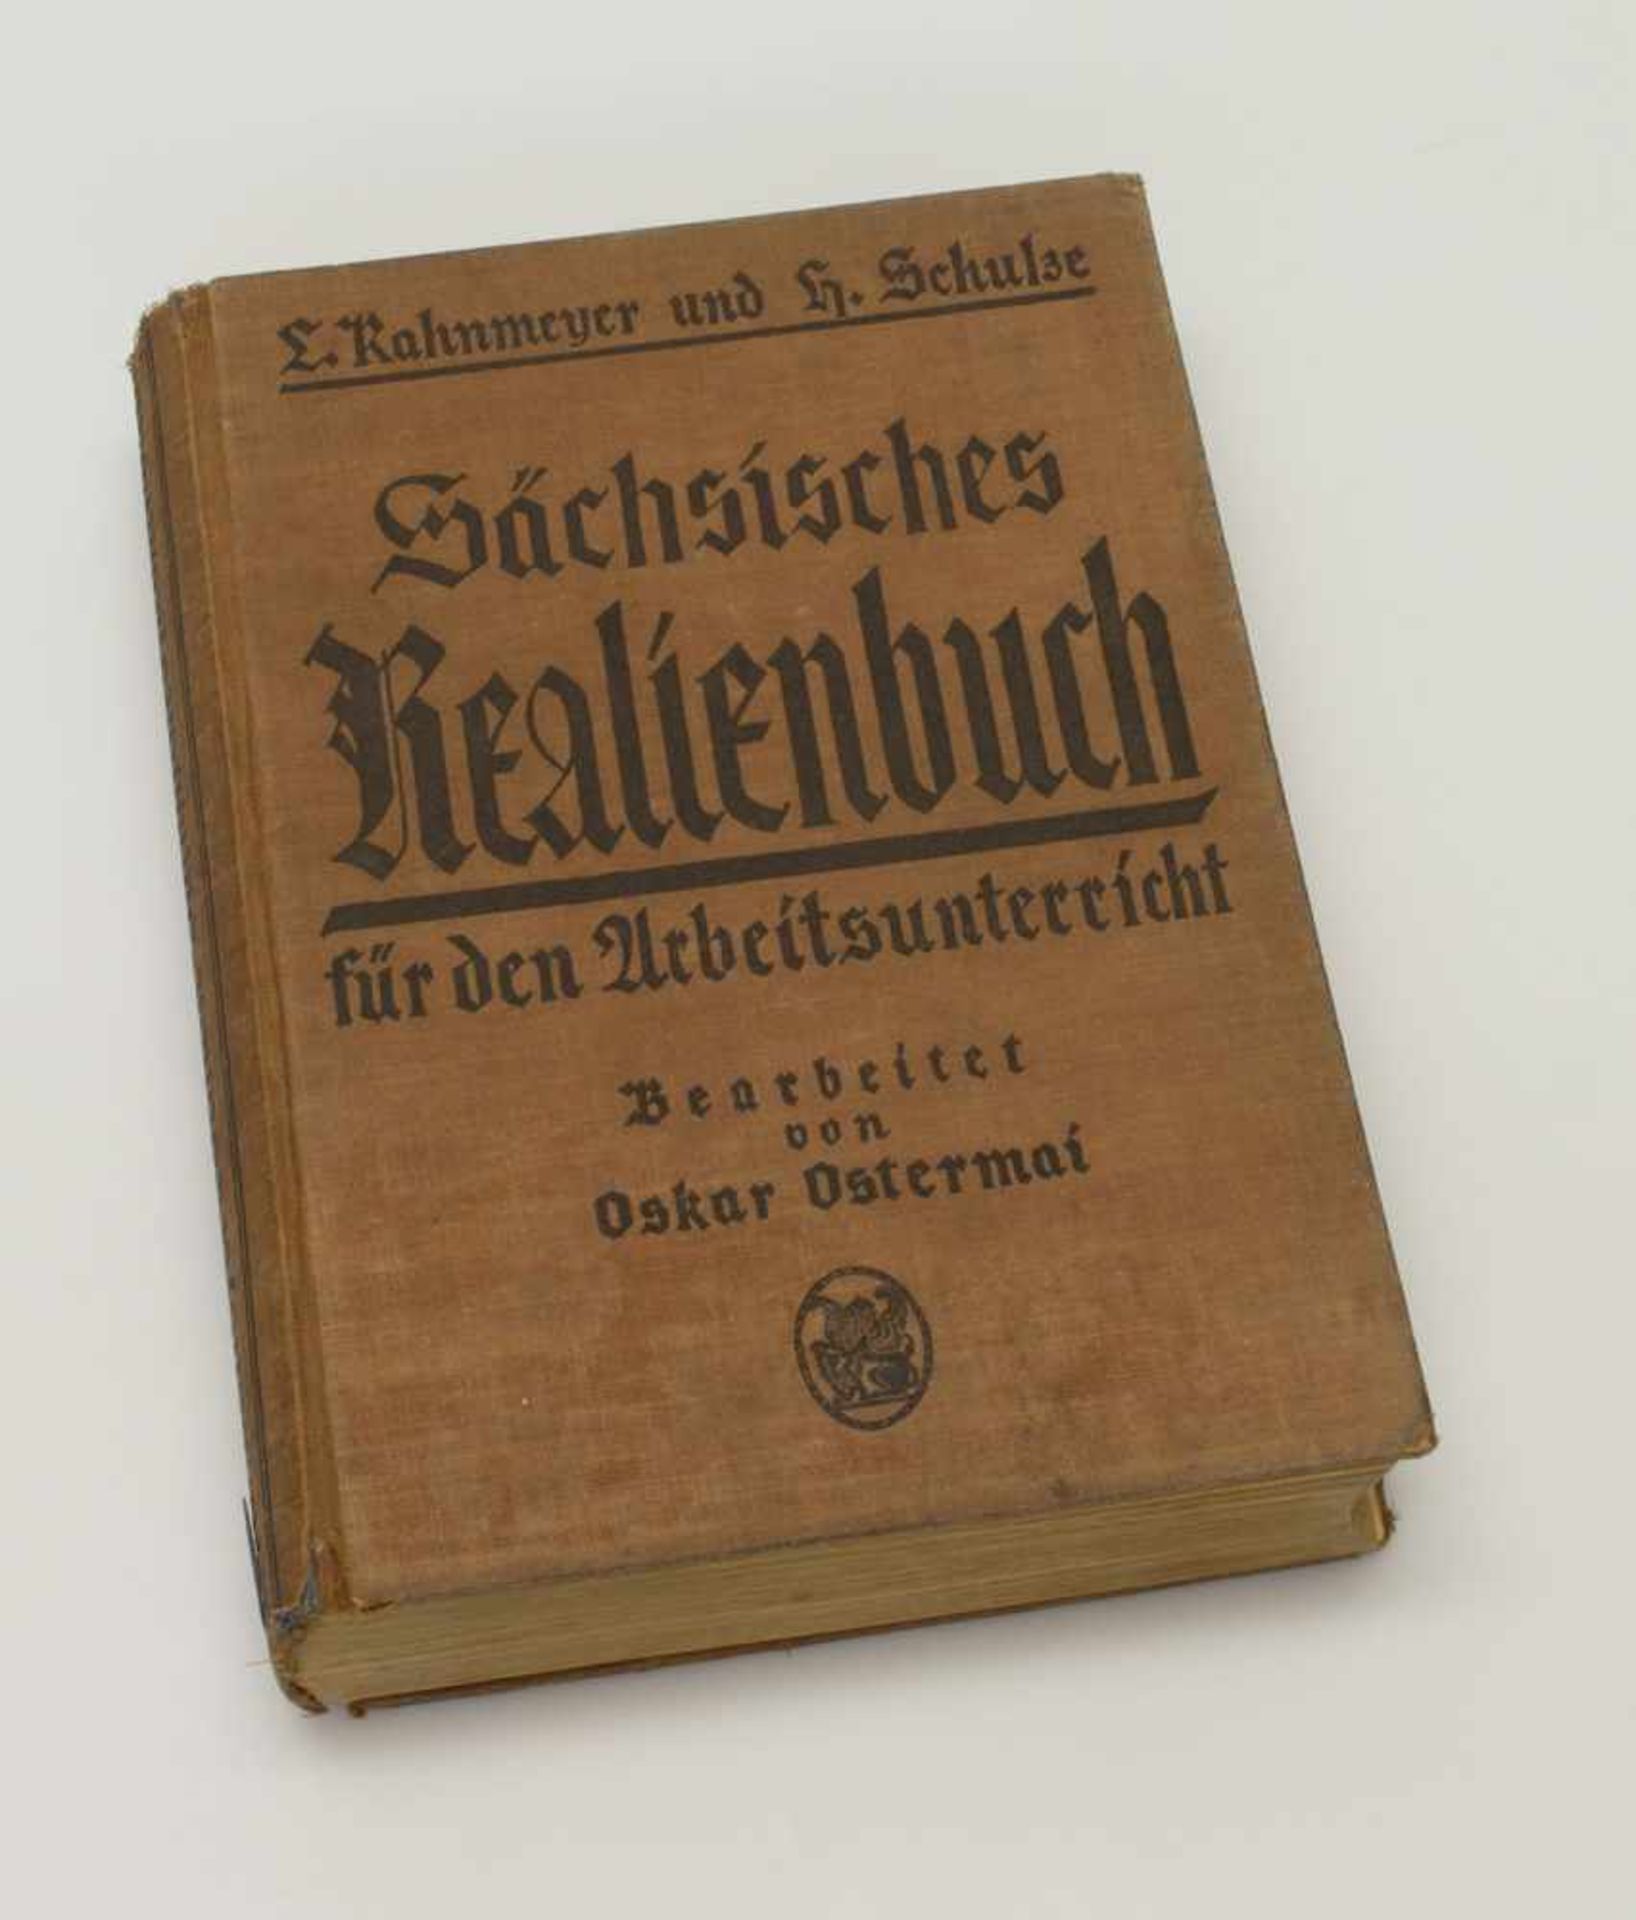 L. Kahnmeyer/ H. Schulze„Sächsisches Realienbuch“, Velhagen & Klasing/ Leipzig 1931, zahlr. Abb.